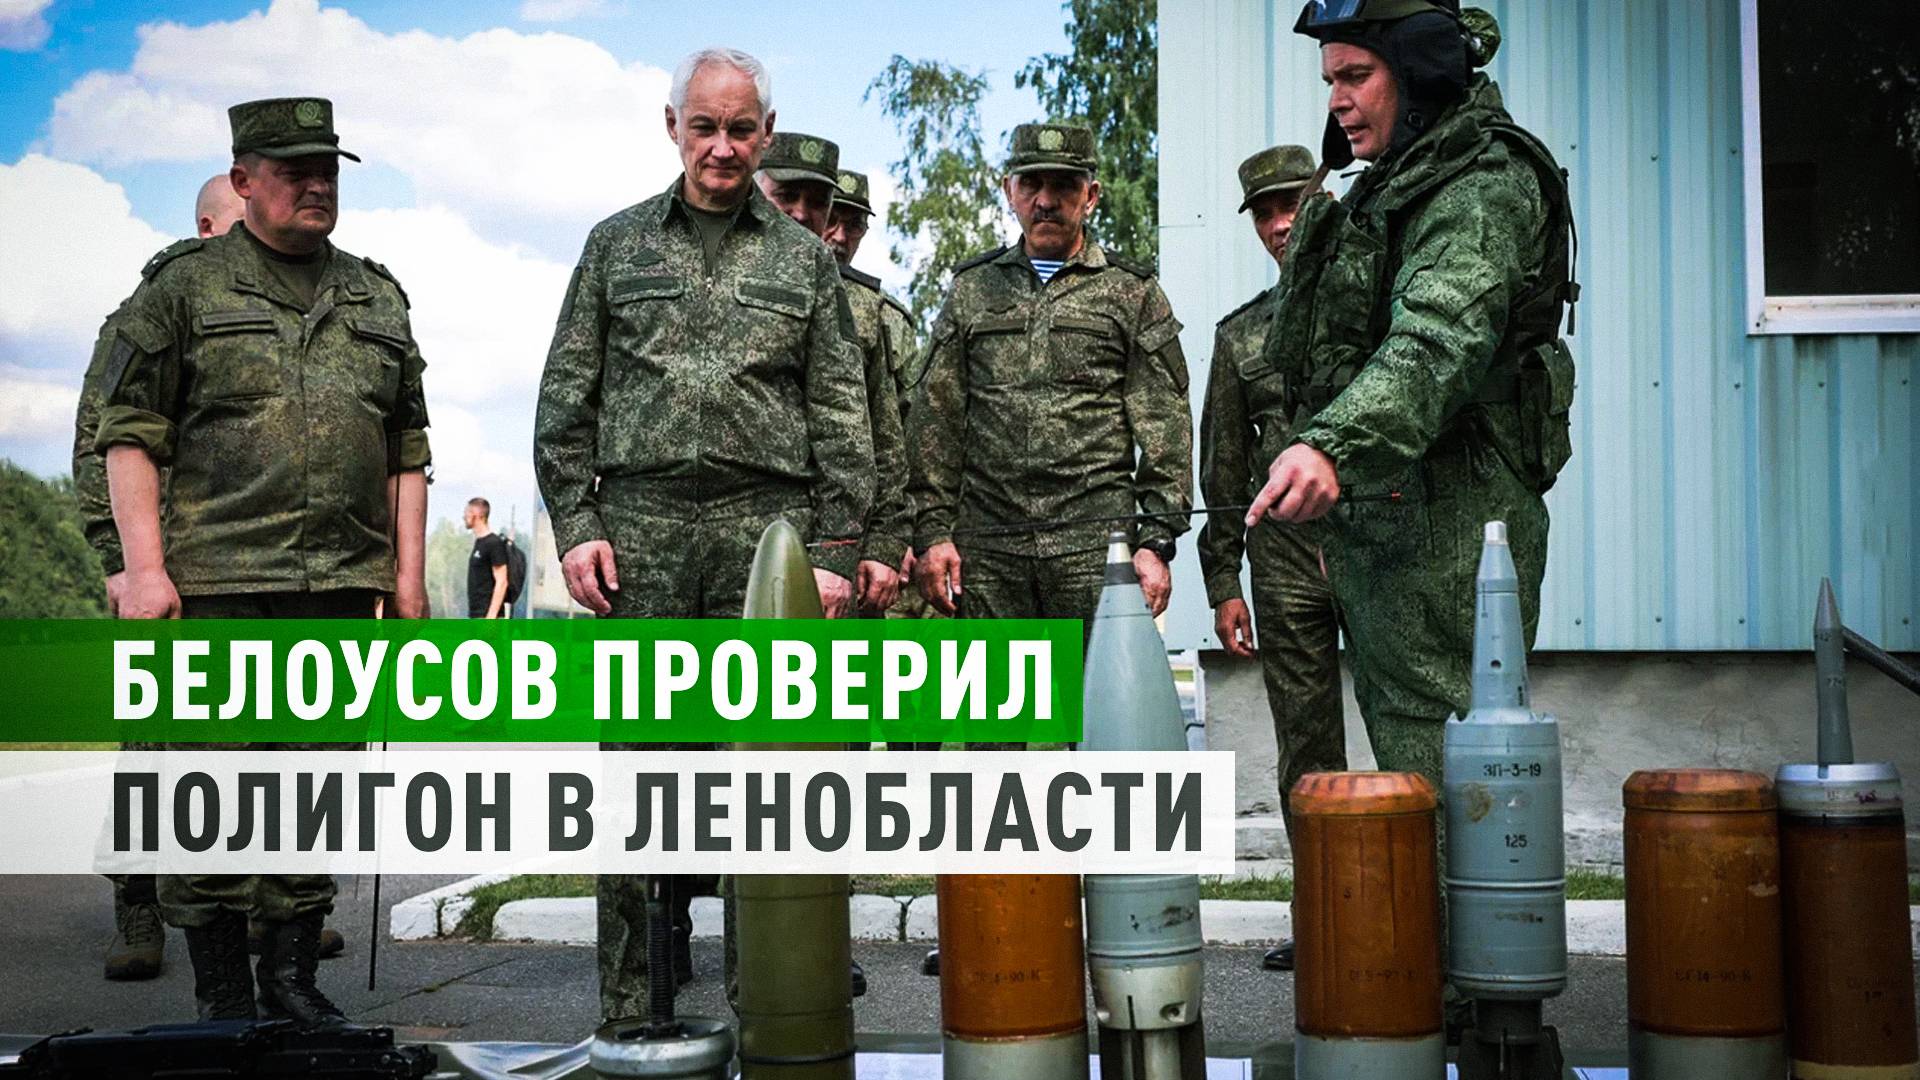 Подготовка танкистов и снайперов: глава Минобороны РФ посетил полигон в Ленобласти